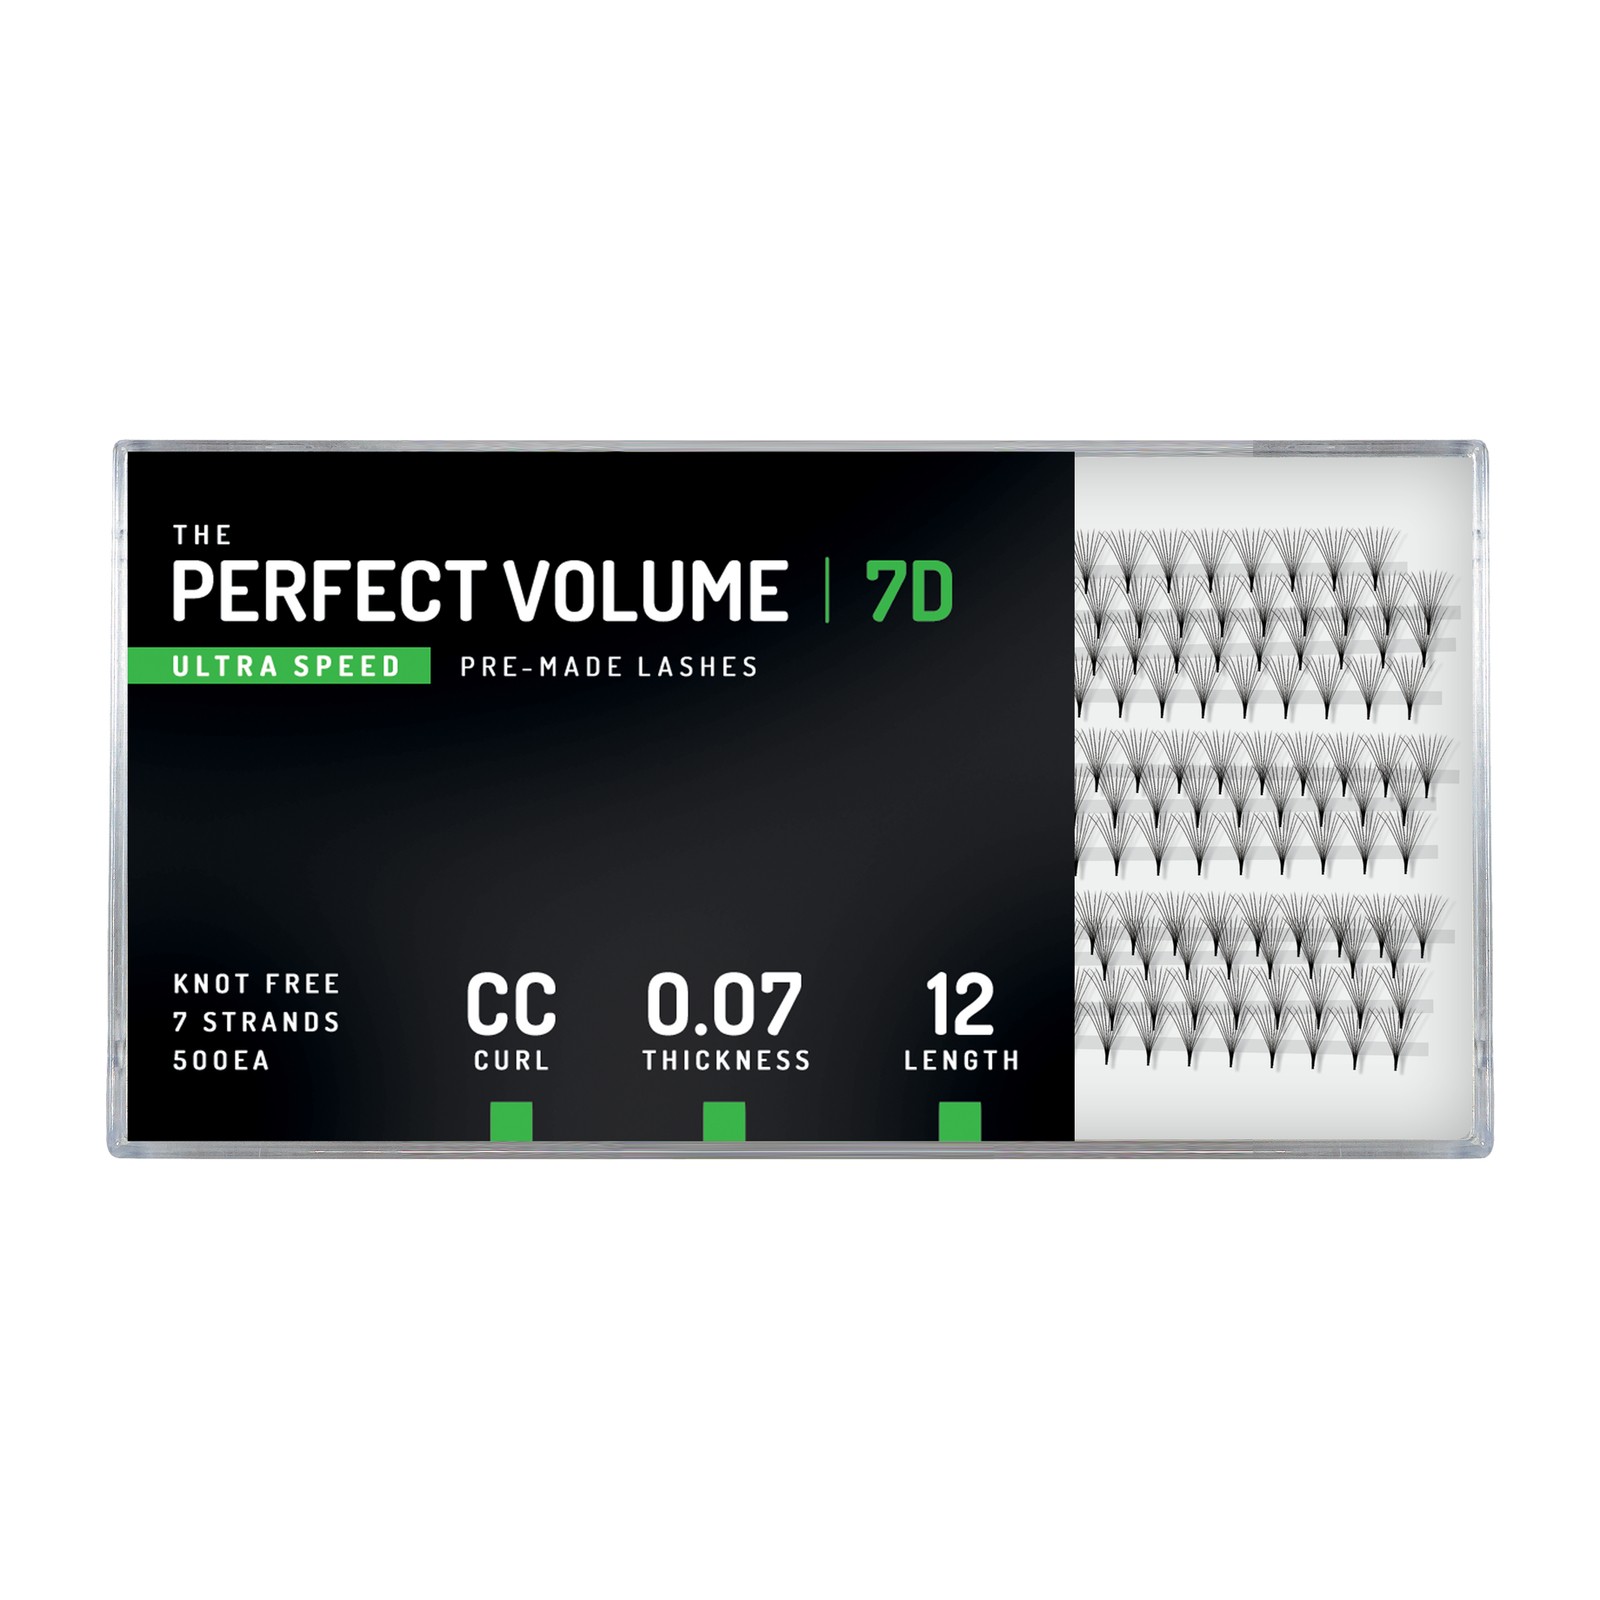 Volume Perfeito Ultra Velocidade -  500 buchețele pré-fabricados 7D -  12 mm, CC, 0,07 mm